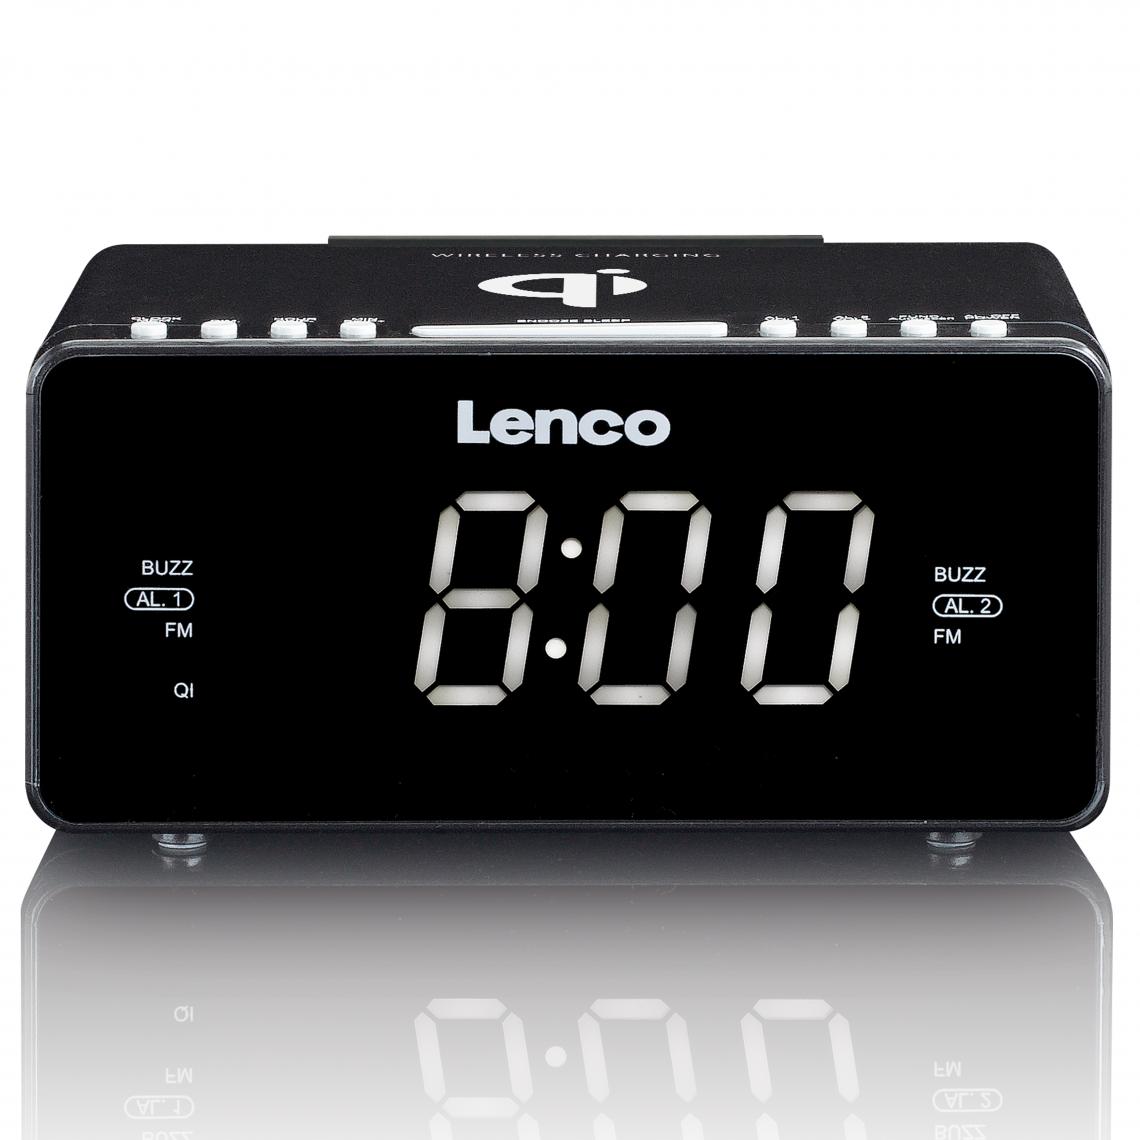 Lenco - Radio-réveil FM stéréo avec USB et chargeur de smartphone sans fil Qi CR-550BK Noir - Réveil